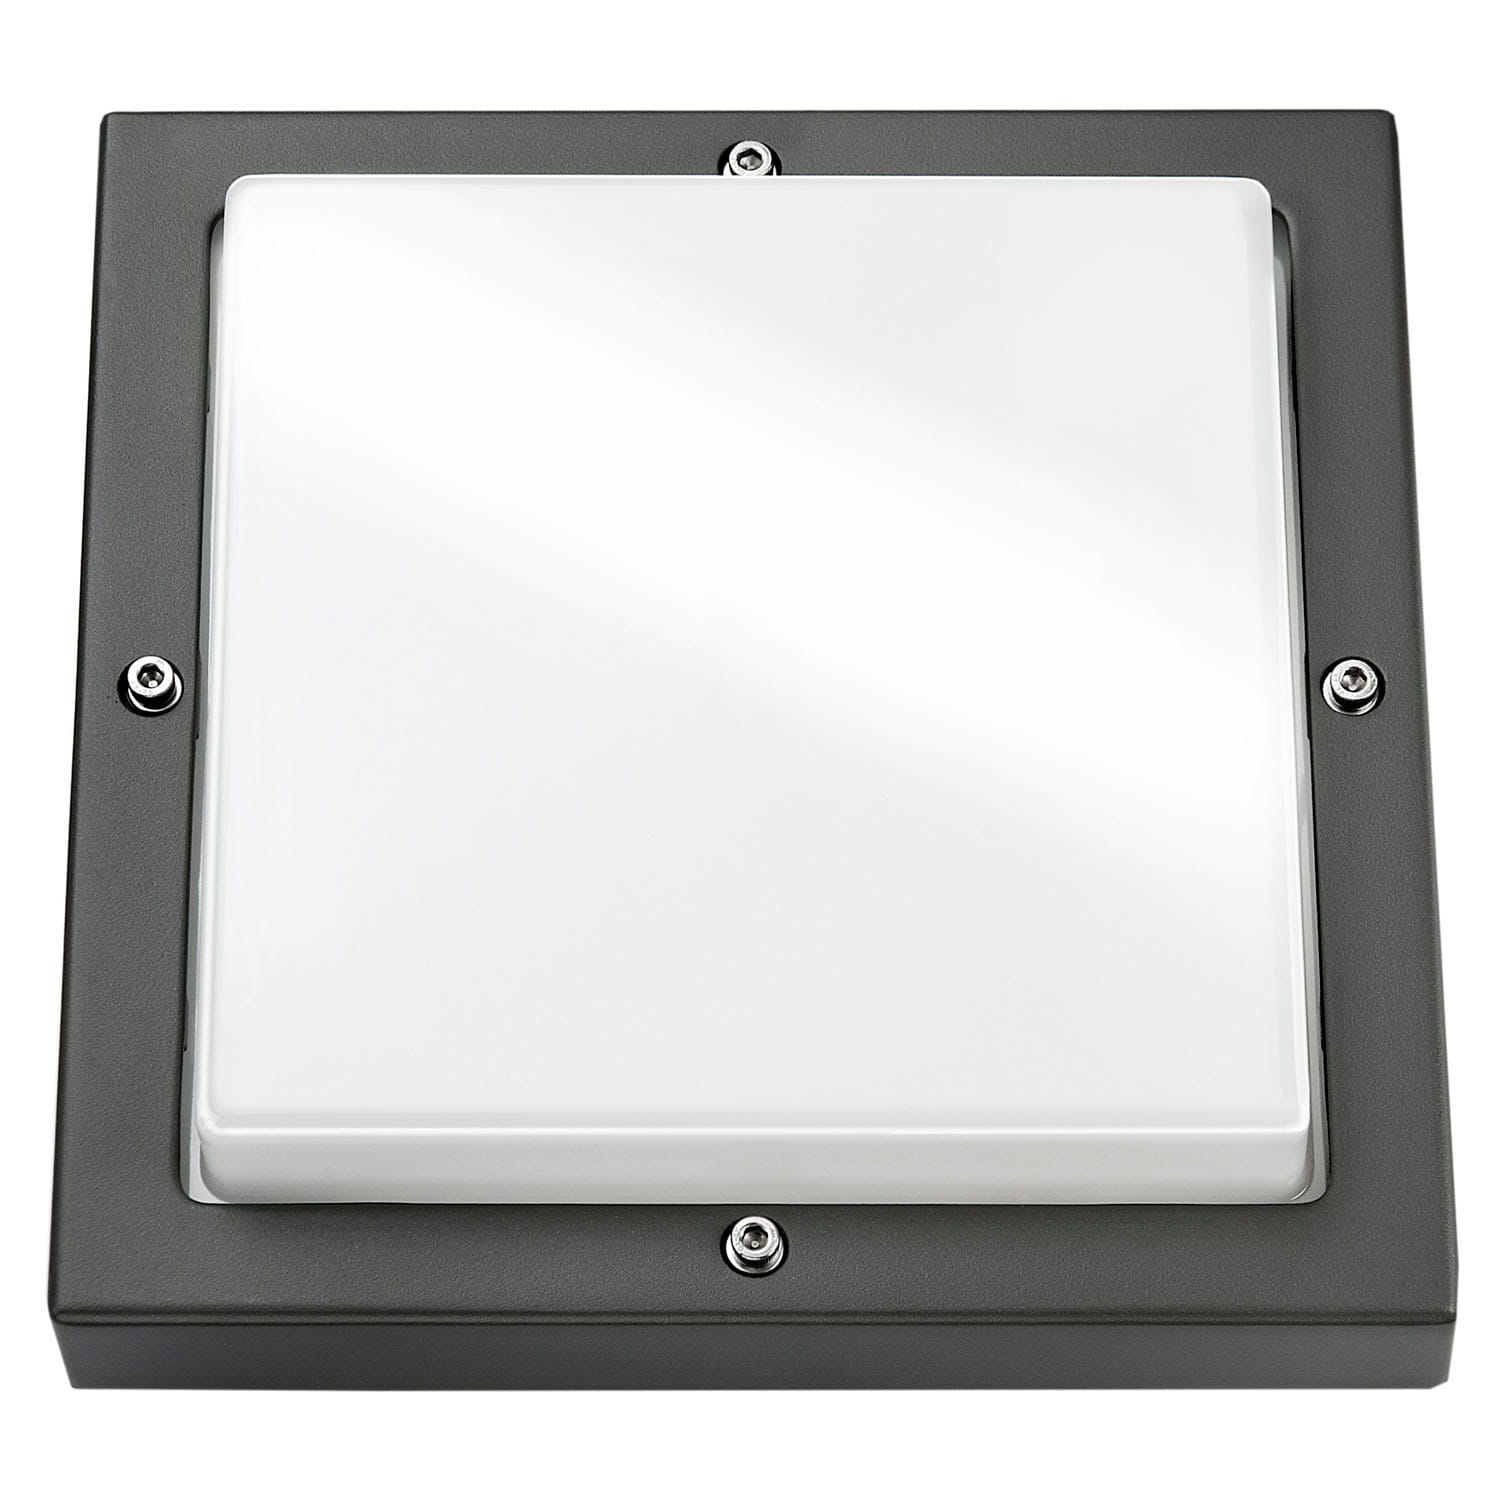 SG Lighting - Basso hublot carré graphite 2xE27 avec détecteur classe I IP65 IK10 850°